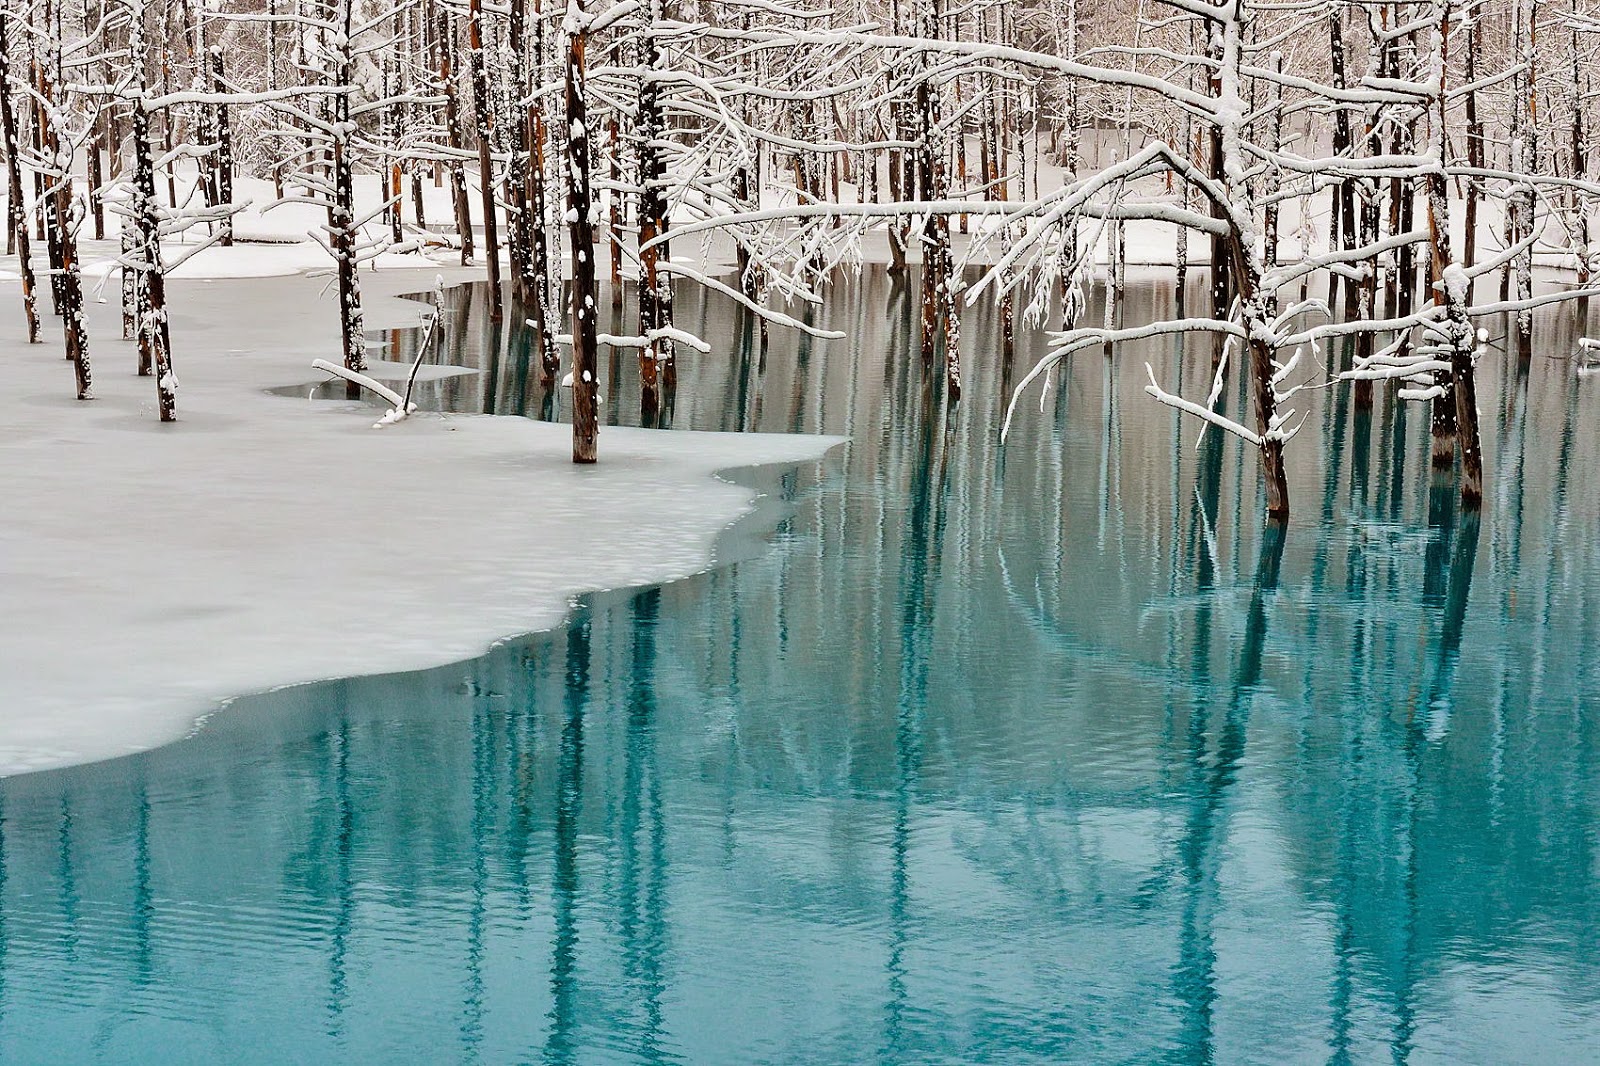 Banco de Imágenes: 25 fotografías del invierno con fascinantes paisajes